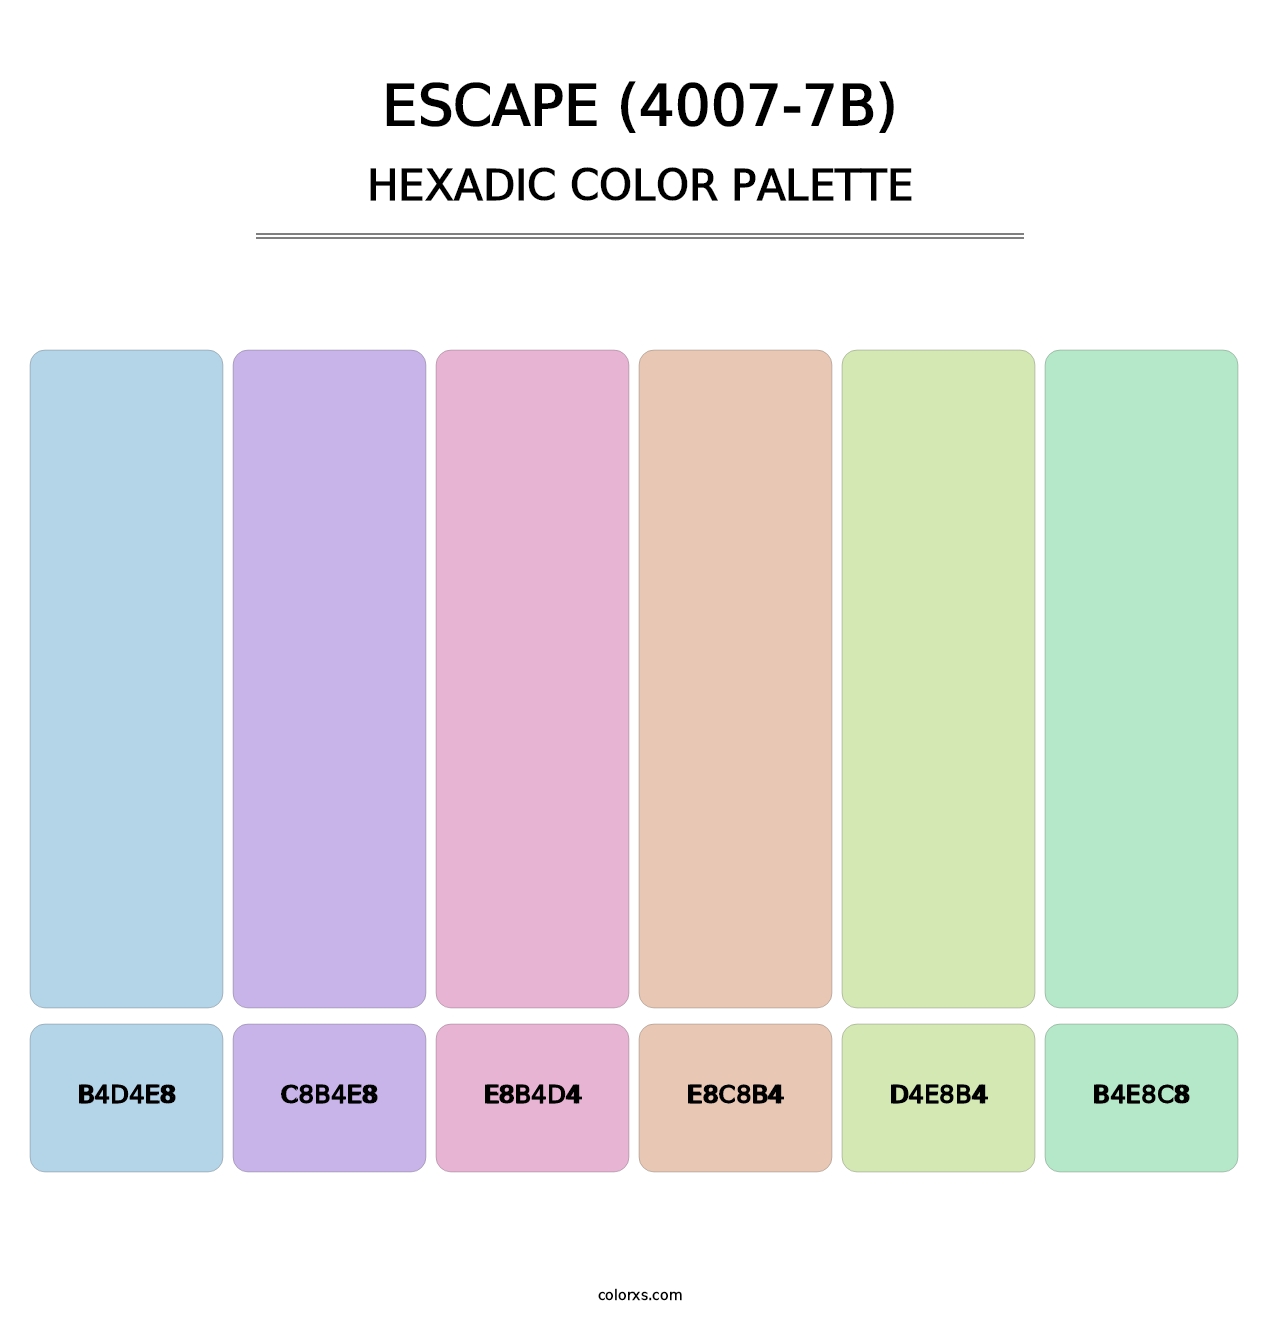 Escape (4007-7B) - Hexadic Color Palette